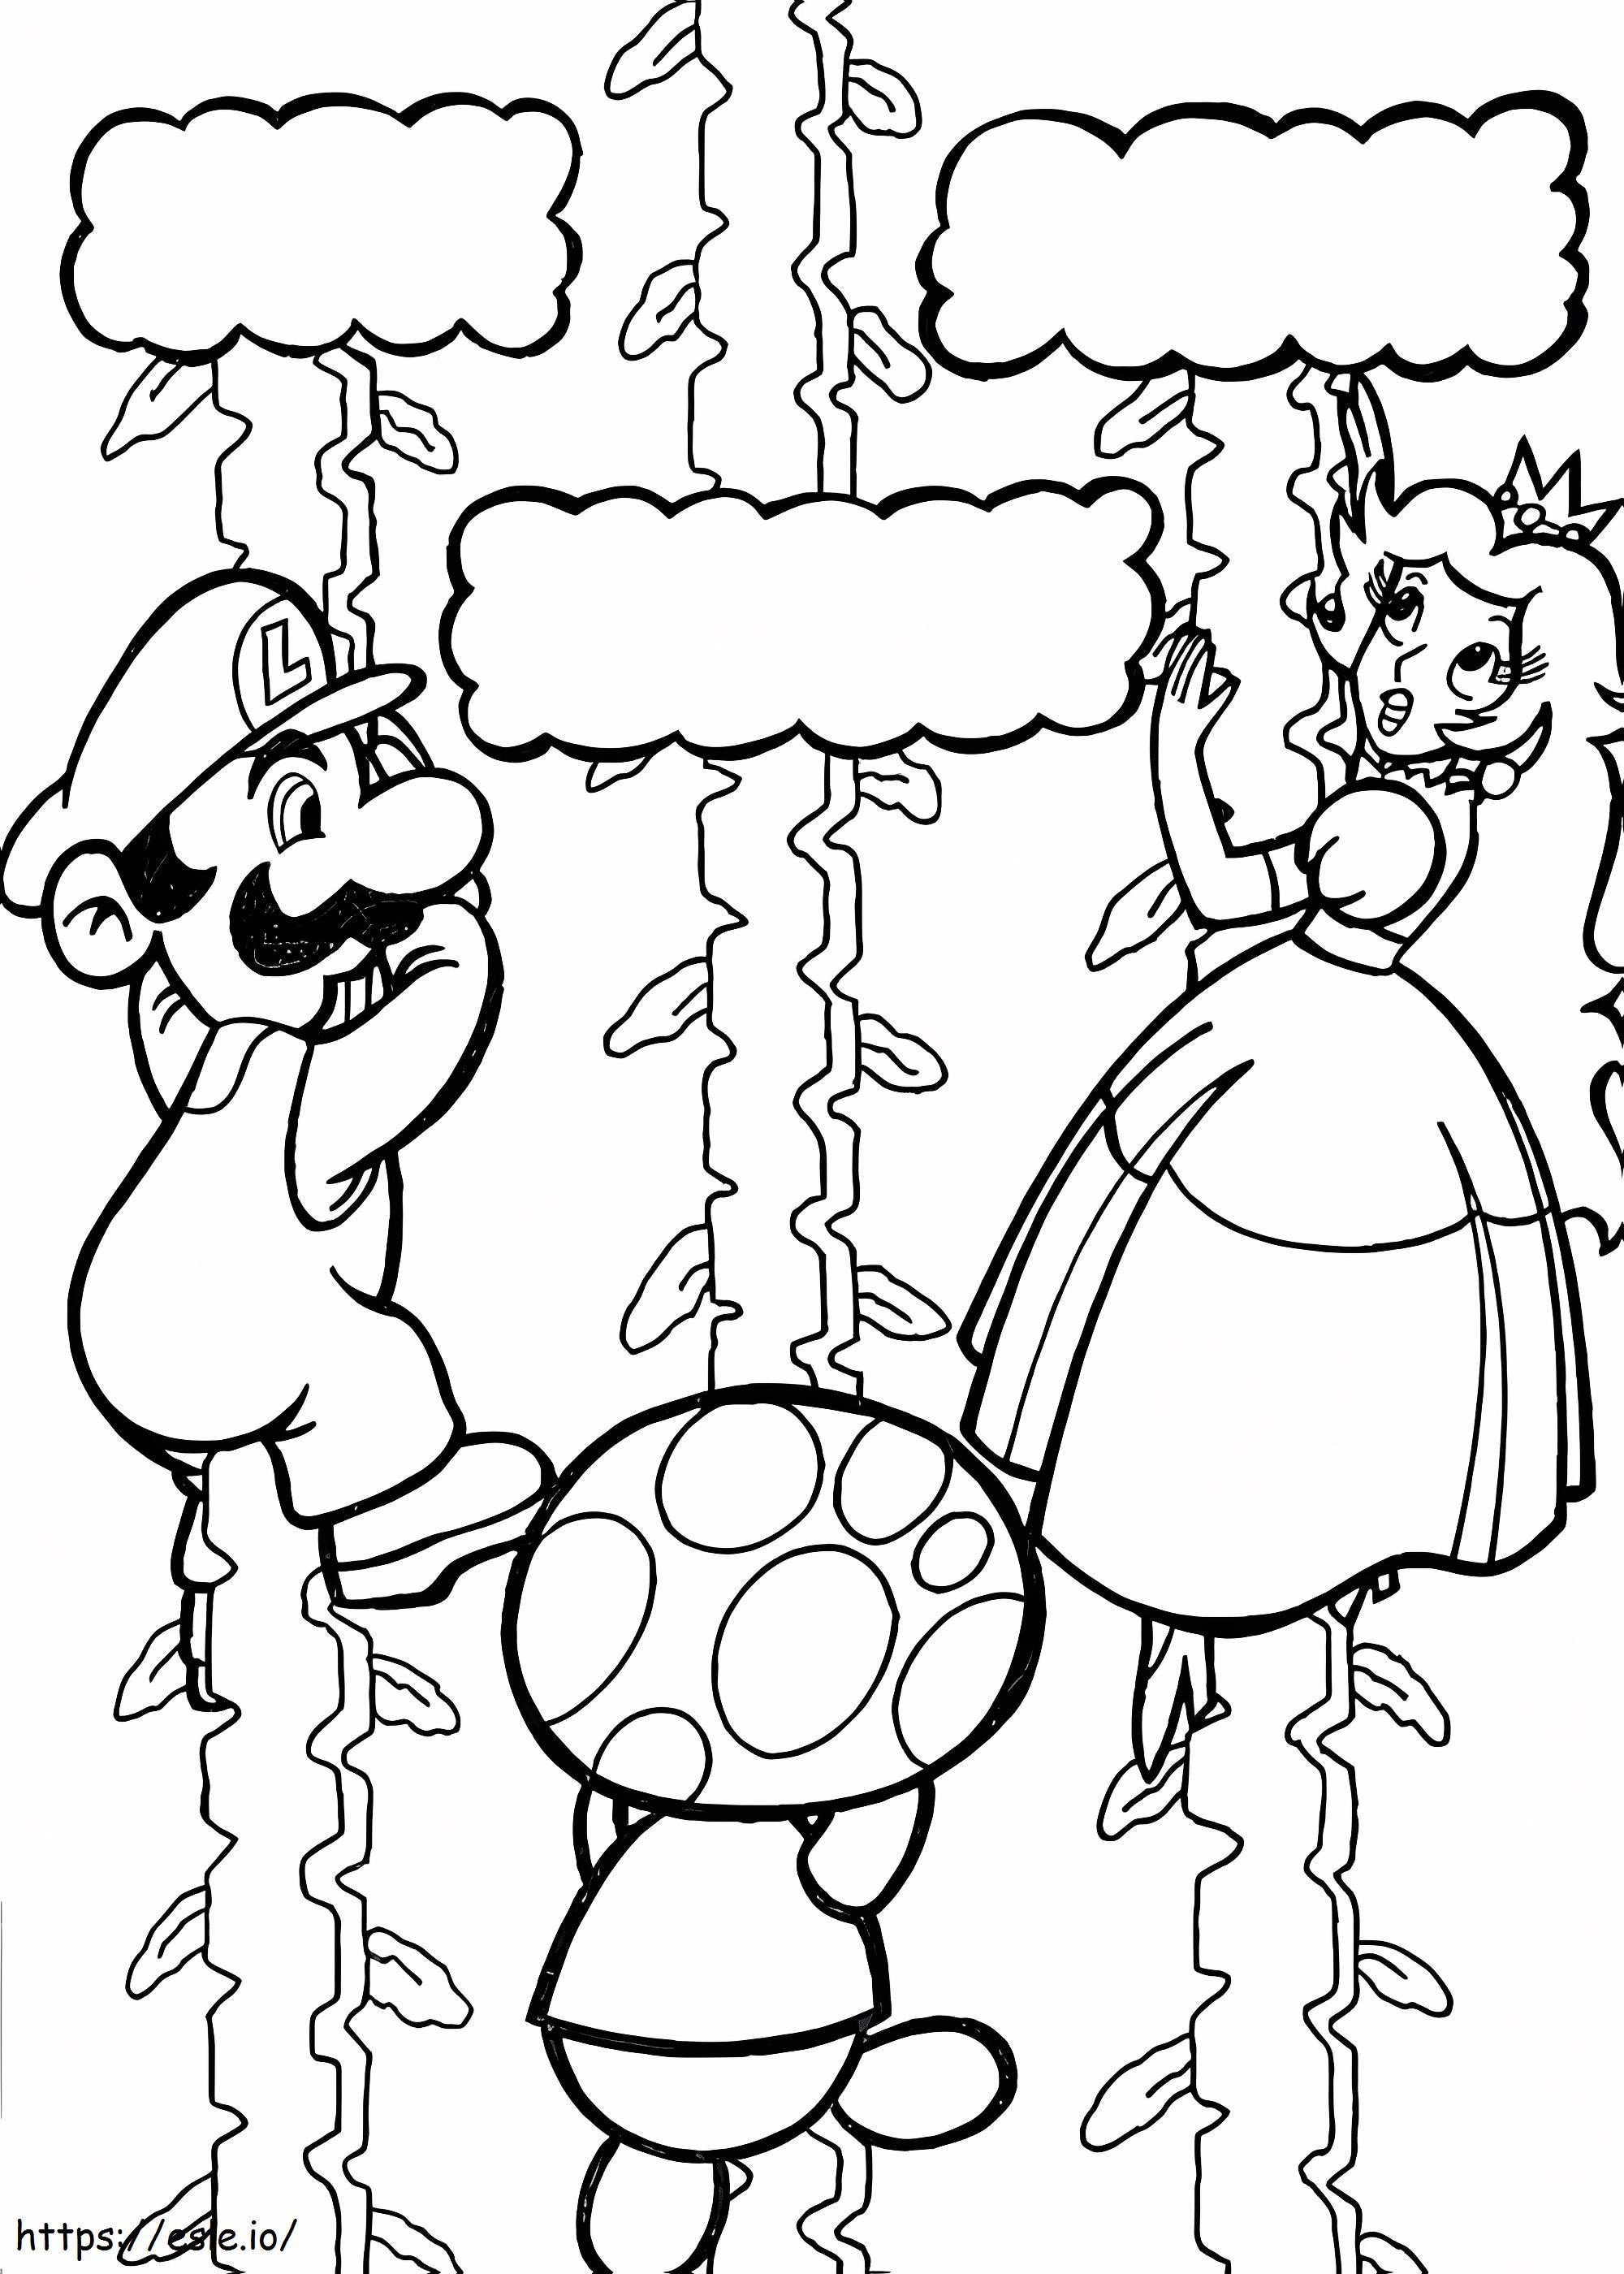 Mario pelastaa prinsessan värityskuva